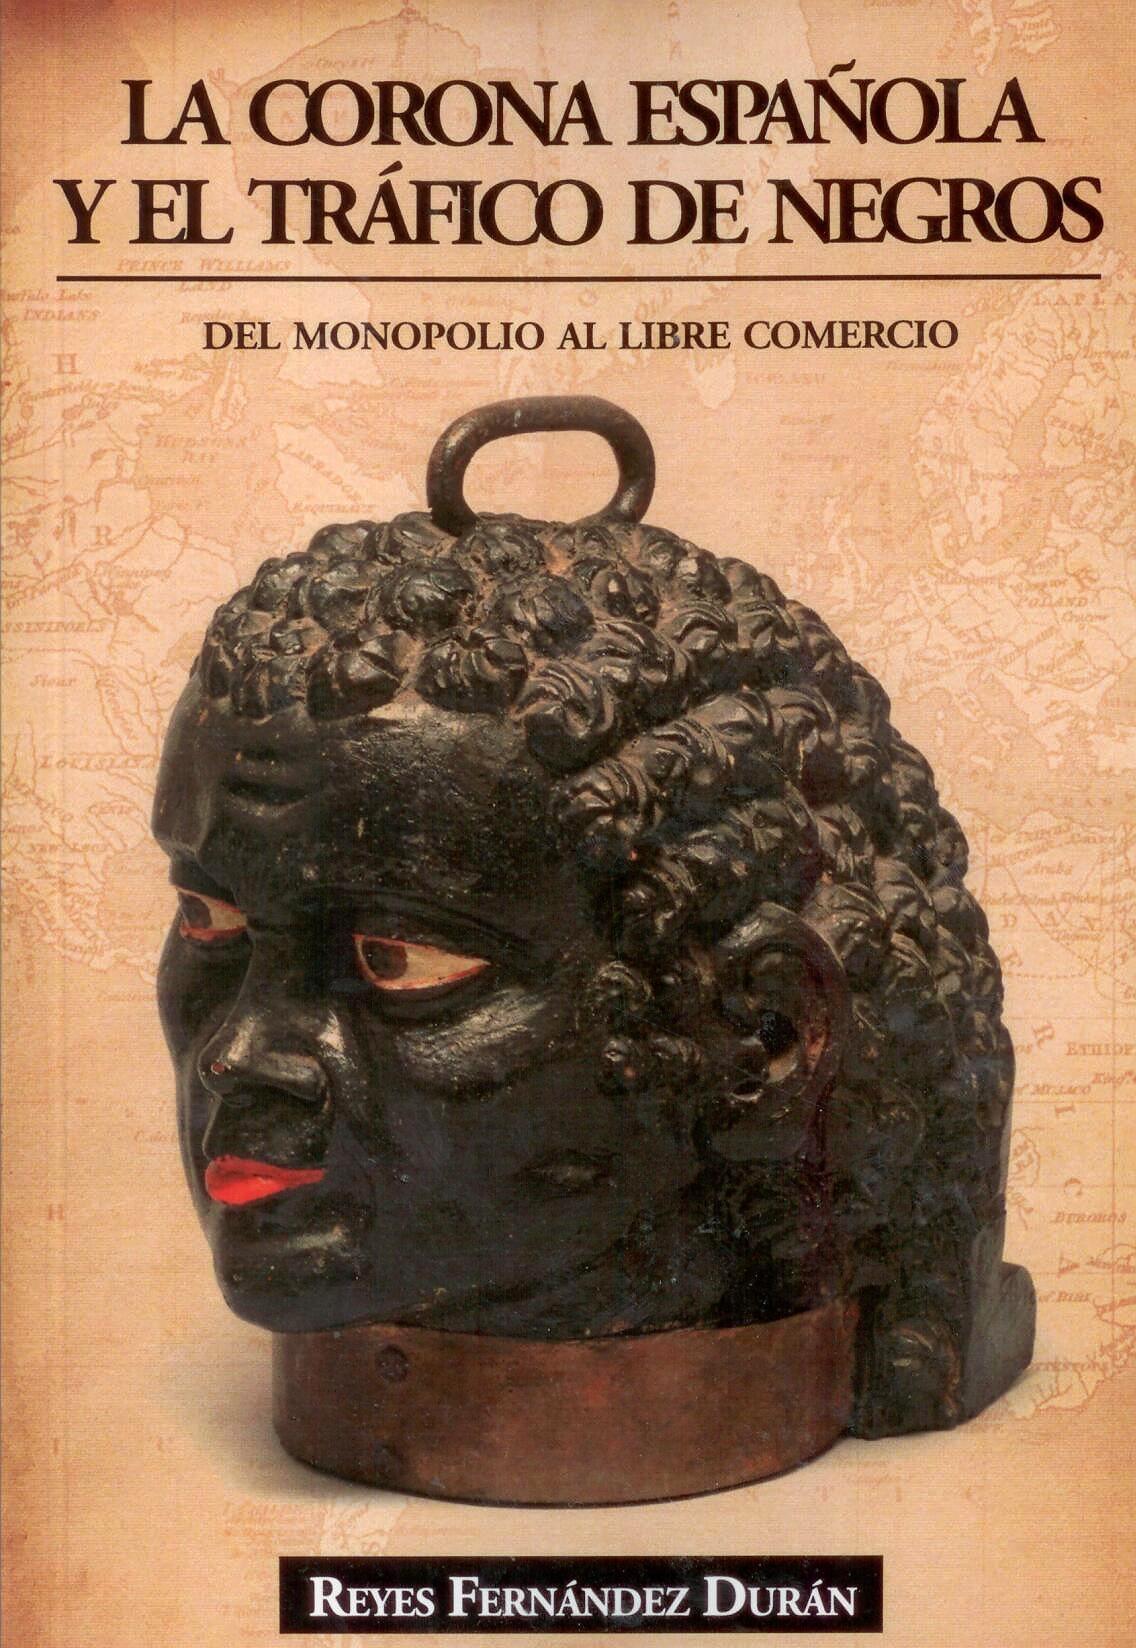 La Corona Española y el Tráfico de Negros "Del Monopolio al Libre Comercio". 